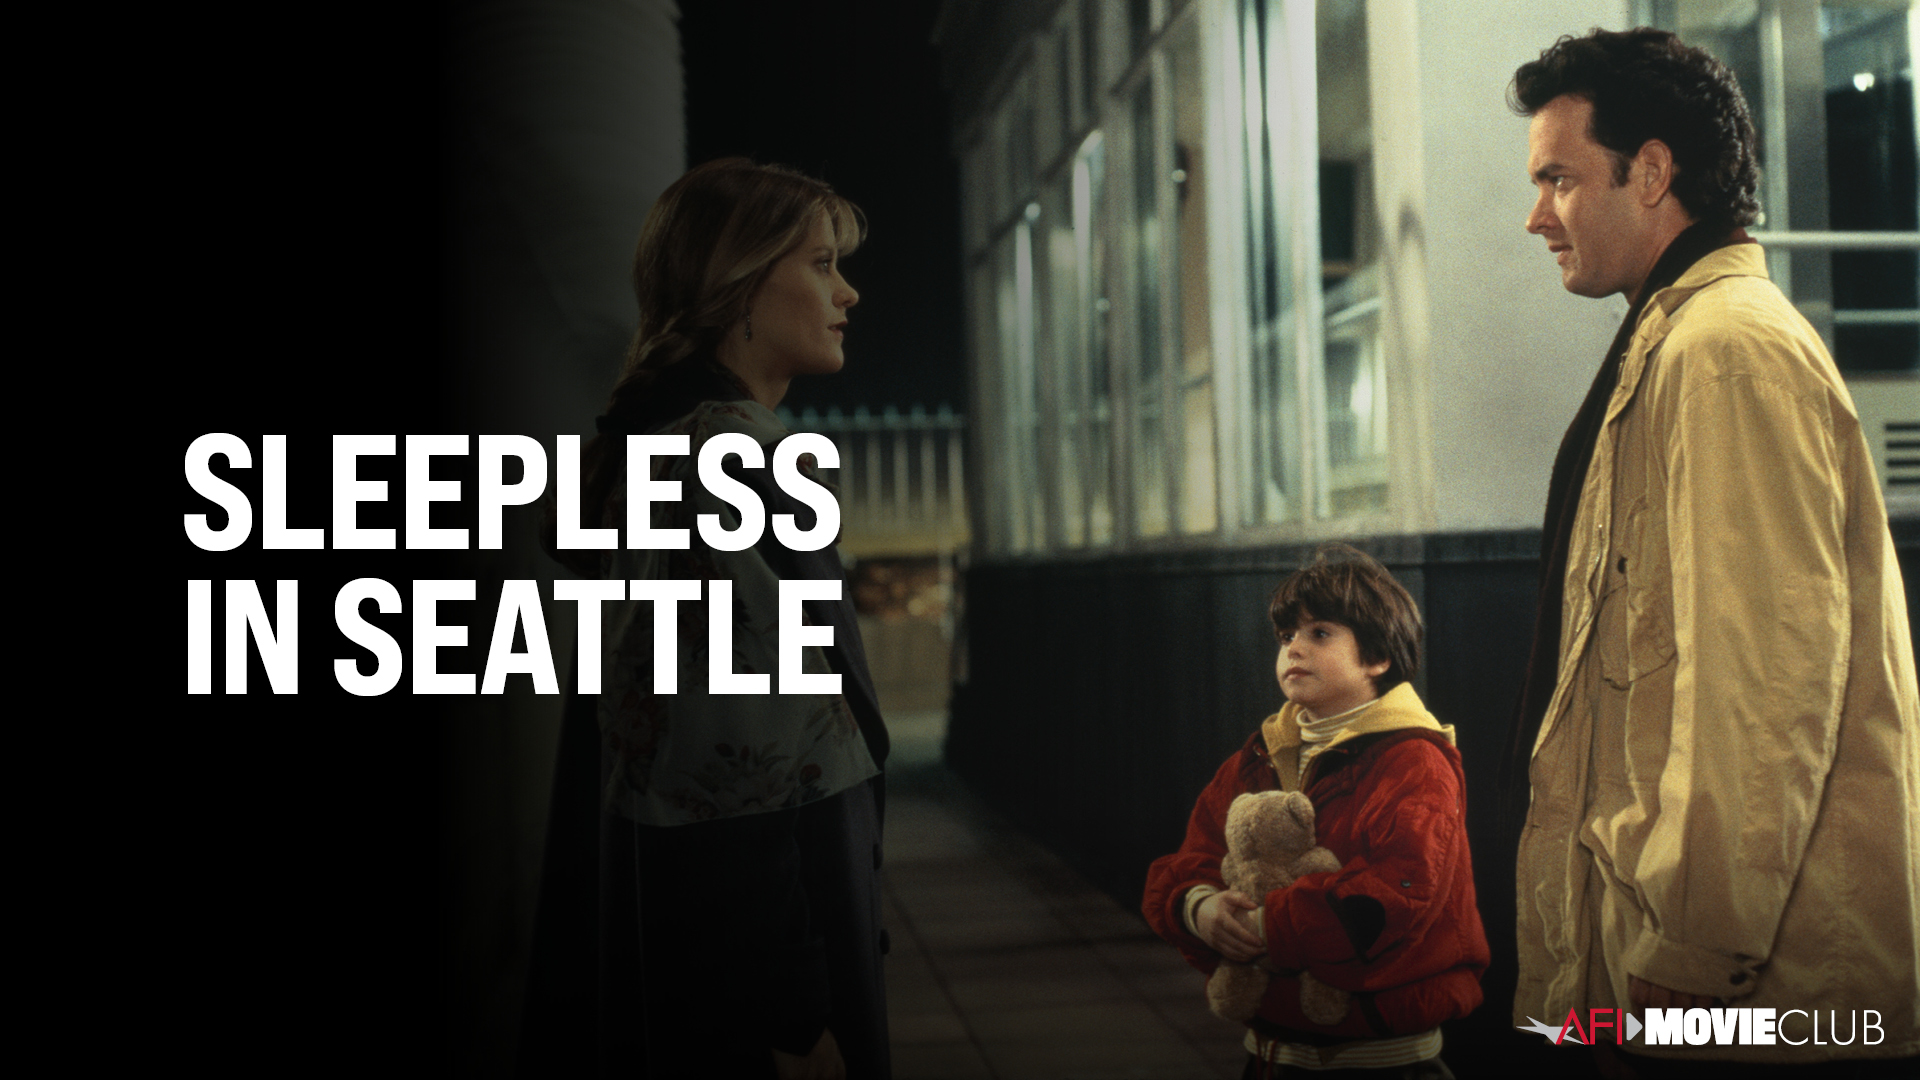 Sleepless in Seattle Film Still - Tom Hanks, Meg Ryan, and Ross Malinger